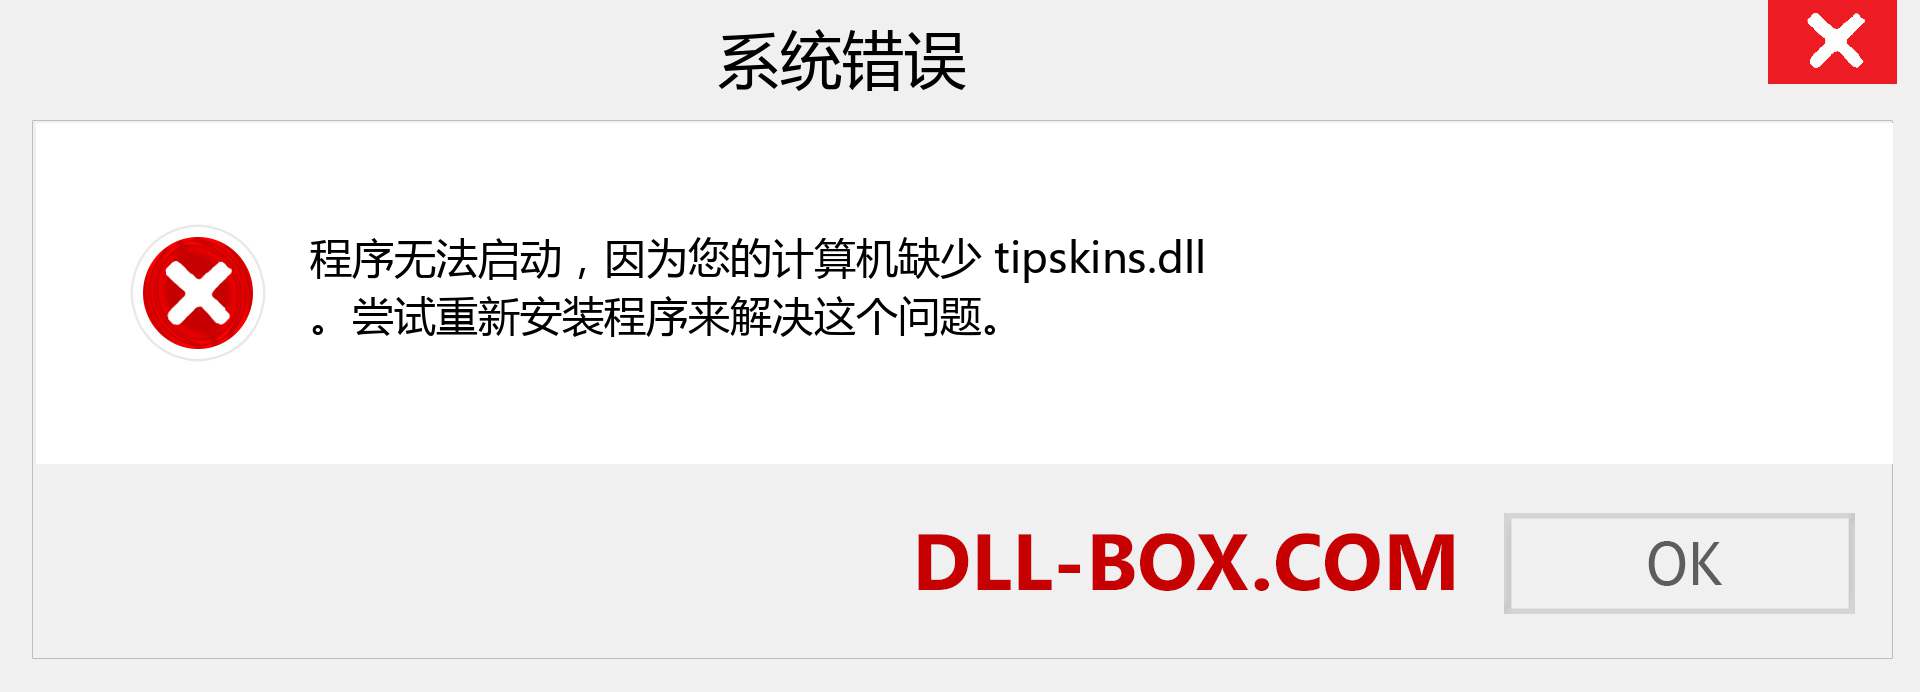 tipskins.dll 文件丢失？。 适用于 Windows 7、8、10 的下载 - 修复 Windows、照片、图像上的 tipskins dll 丢失错误